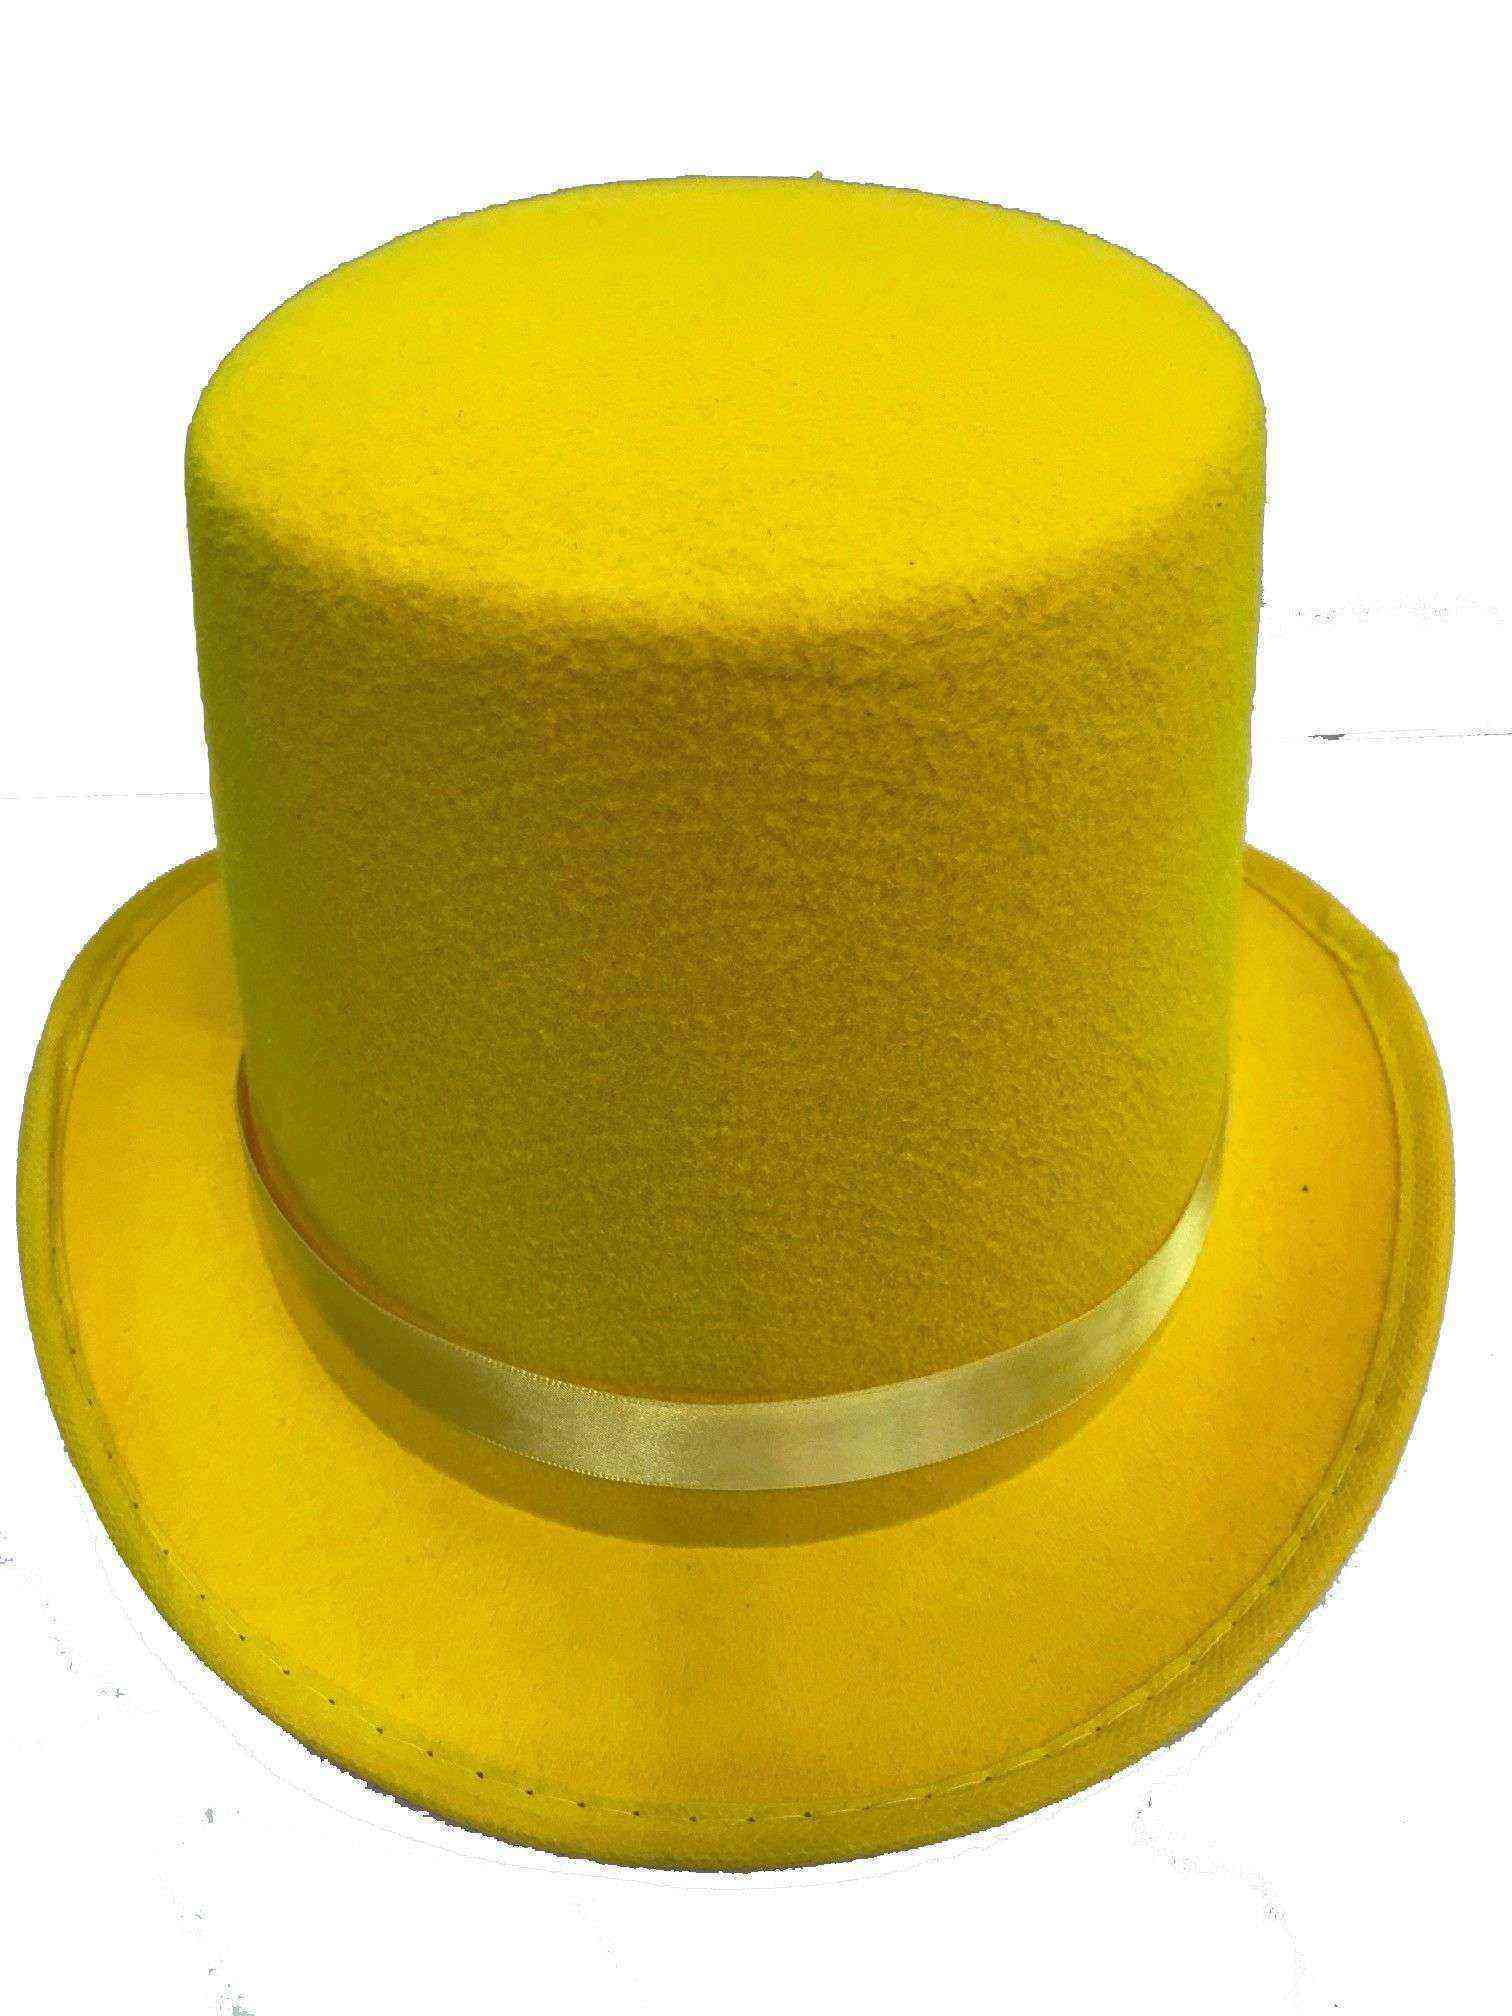 Yetişkin Sihirbaz Fötr Şapka Sarı Renk